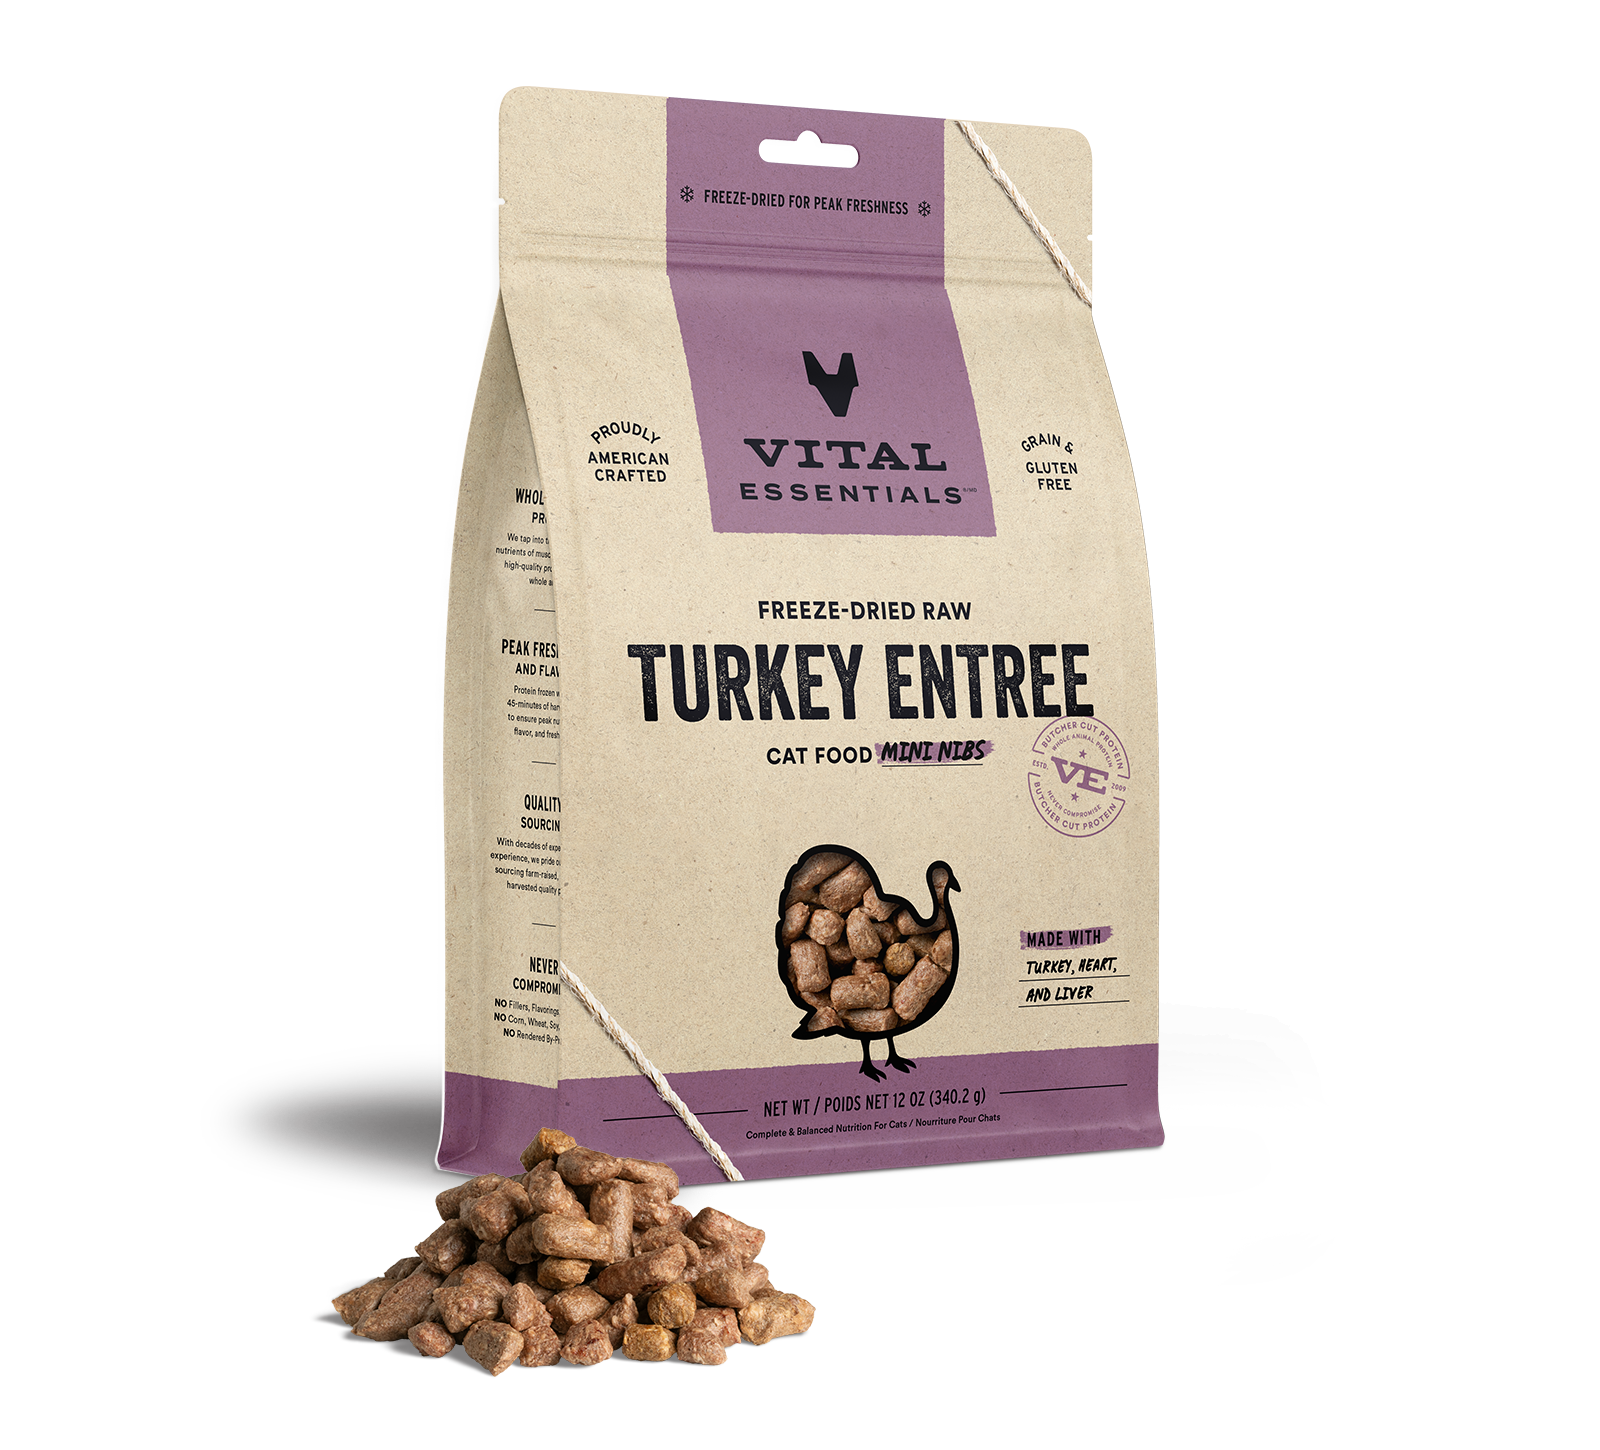 Vital Essentials Freeze-Dried Raw Turkey Entree Cat Food Mini Nibs, 12 oz - Items on Sale Now